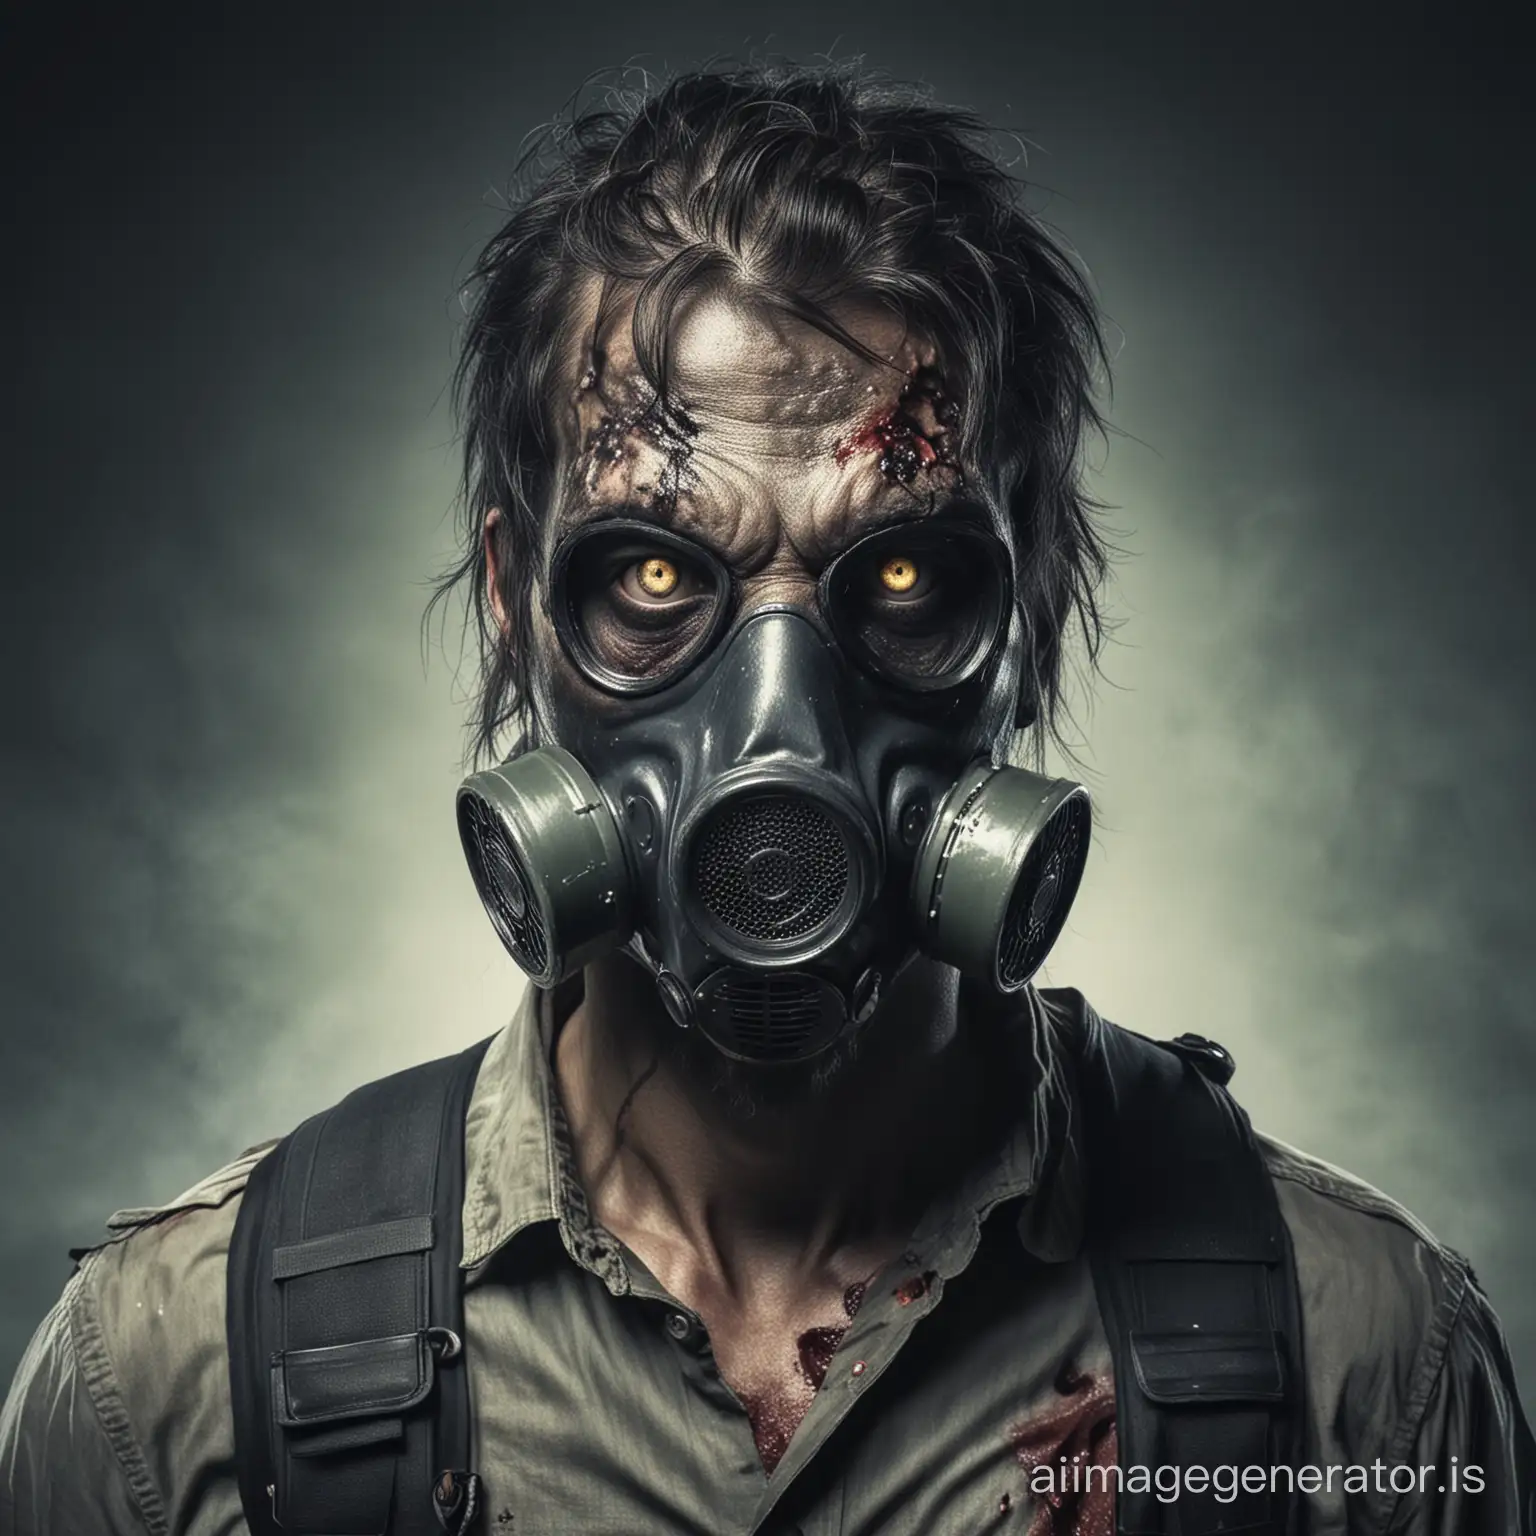 Apocalyptic-Zombie-Wearing-Gas-Mask